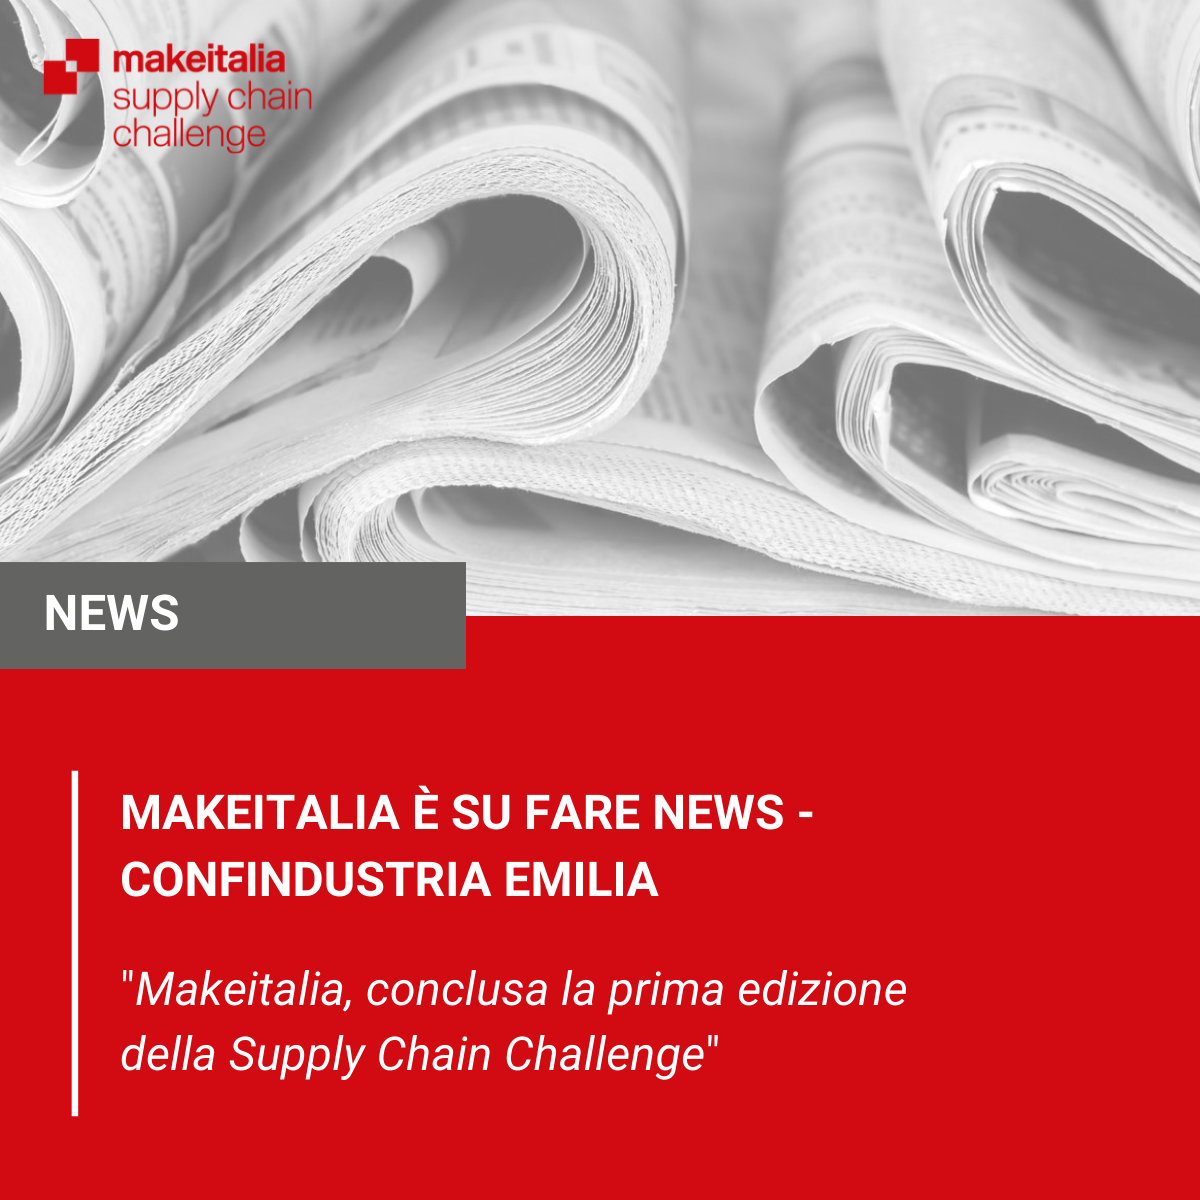 Makeitalia, conclusa la prima edizione della Supply Chain Challenge